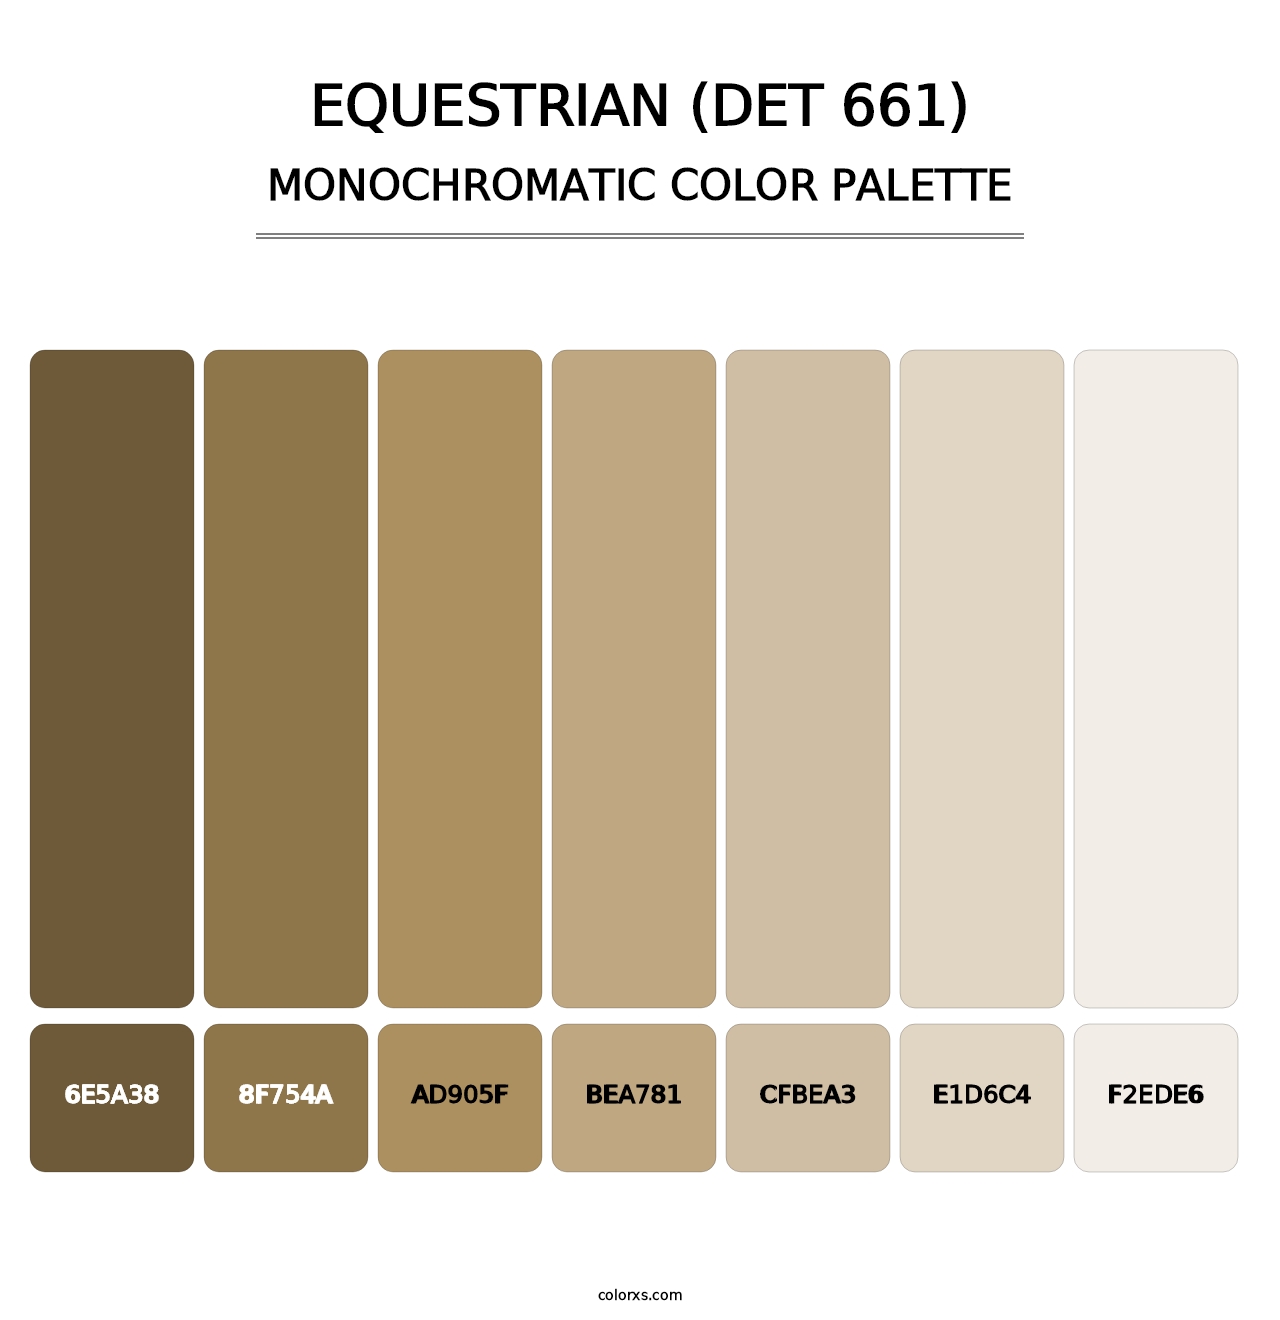 Equestrian (DET 661) - Monochromatic Color Palette